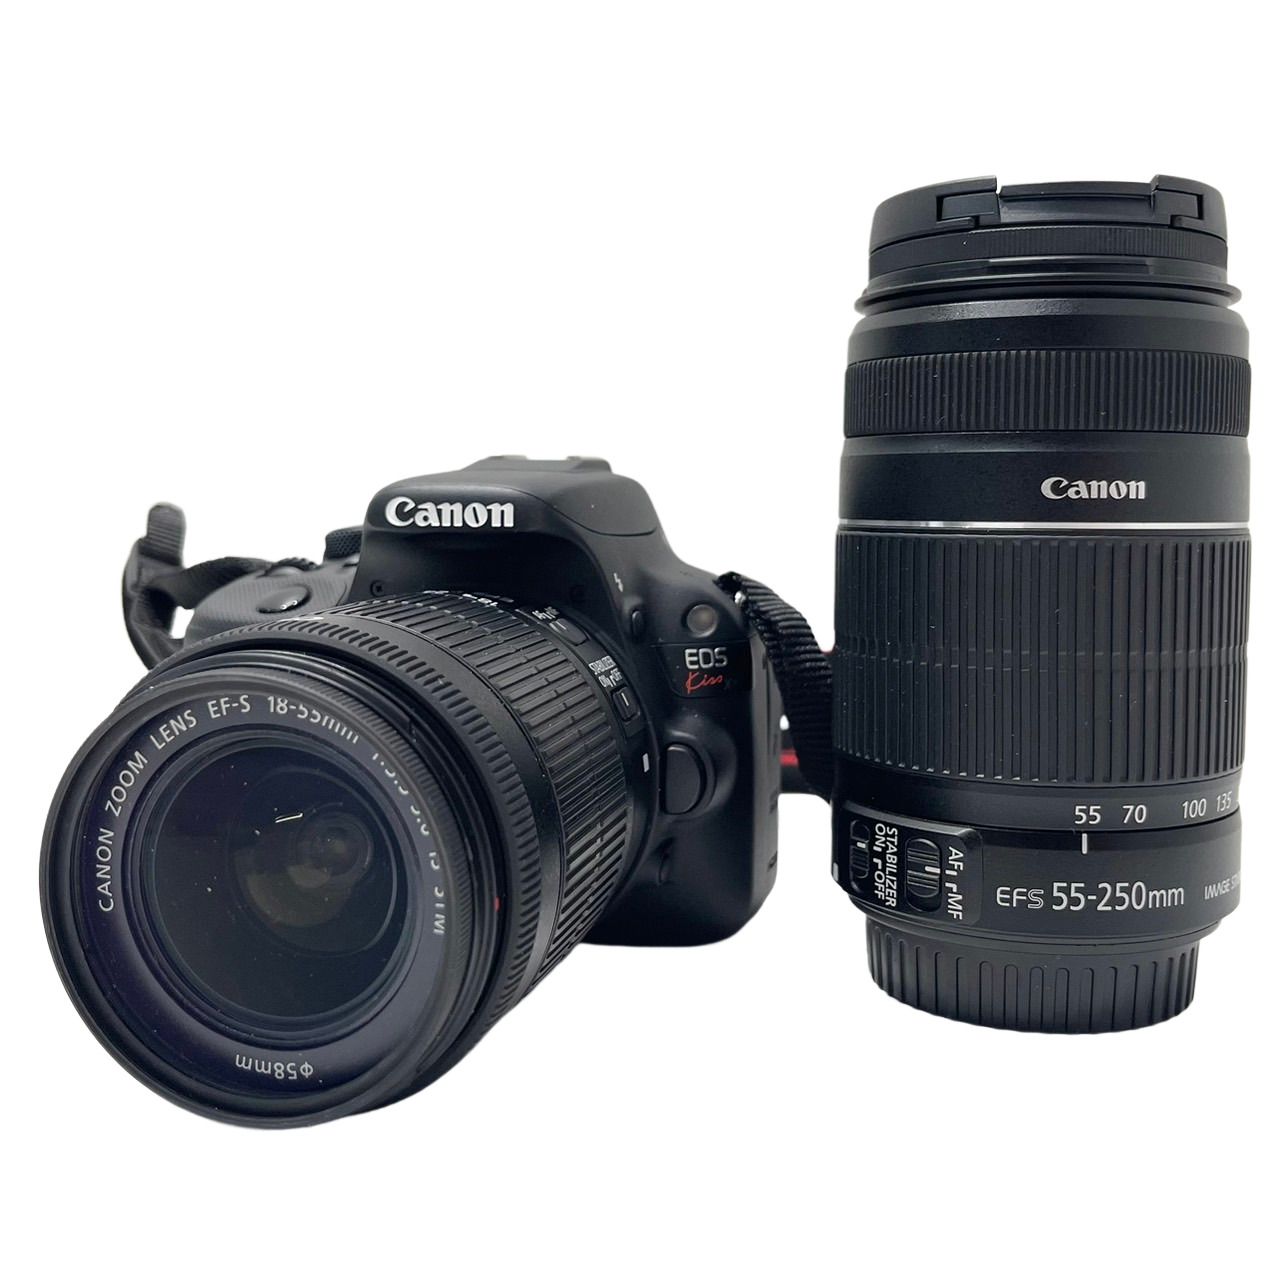 Canon EOS Kiss X7 ダブルズームキット デジタル一眼レフ カメラ EF-S18-55mm EF-S55-250mm キャノン  イオスキス 【美品】 U2305R4 質屋アシスト メルカリ